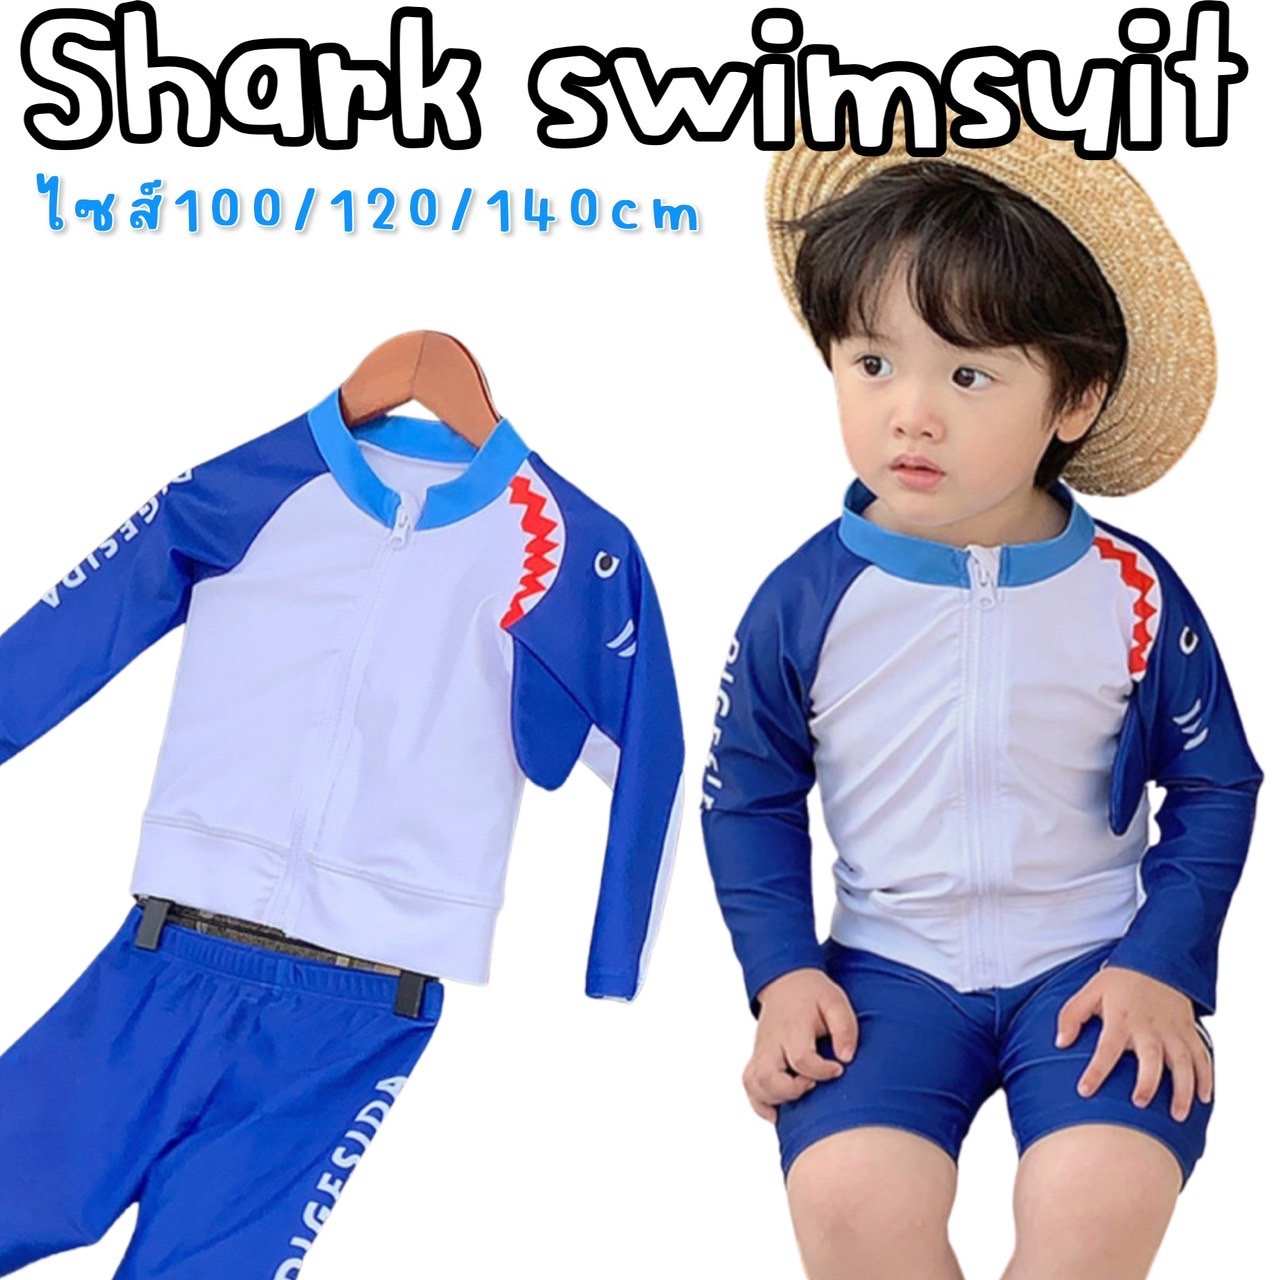 ชุดว่ายน้ำเด็ก shark swimsuit